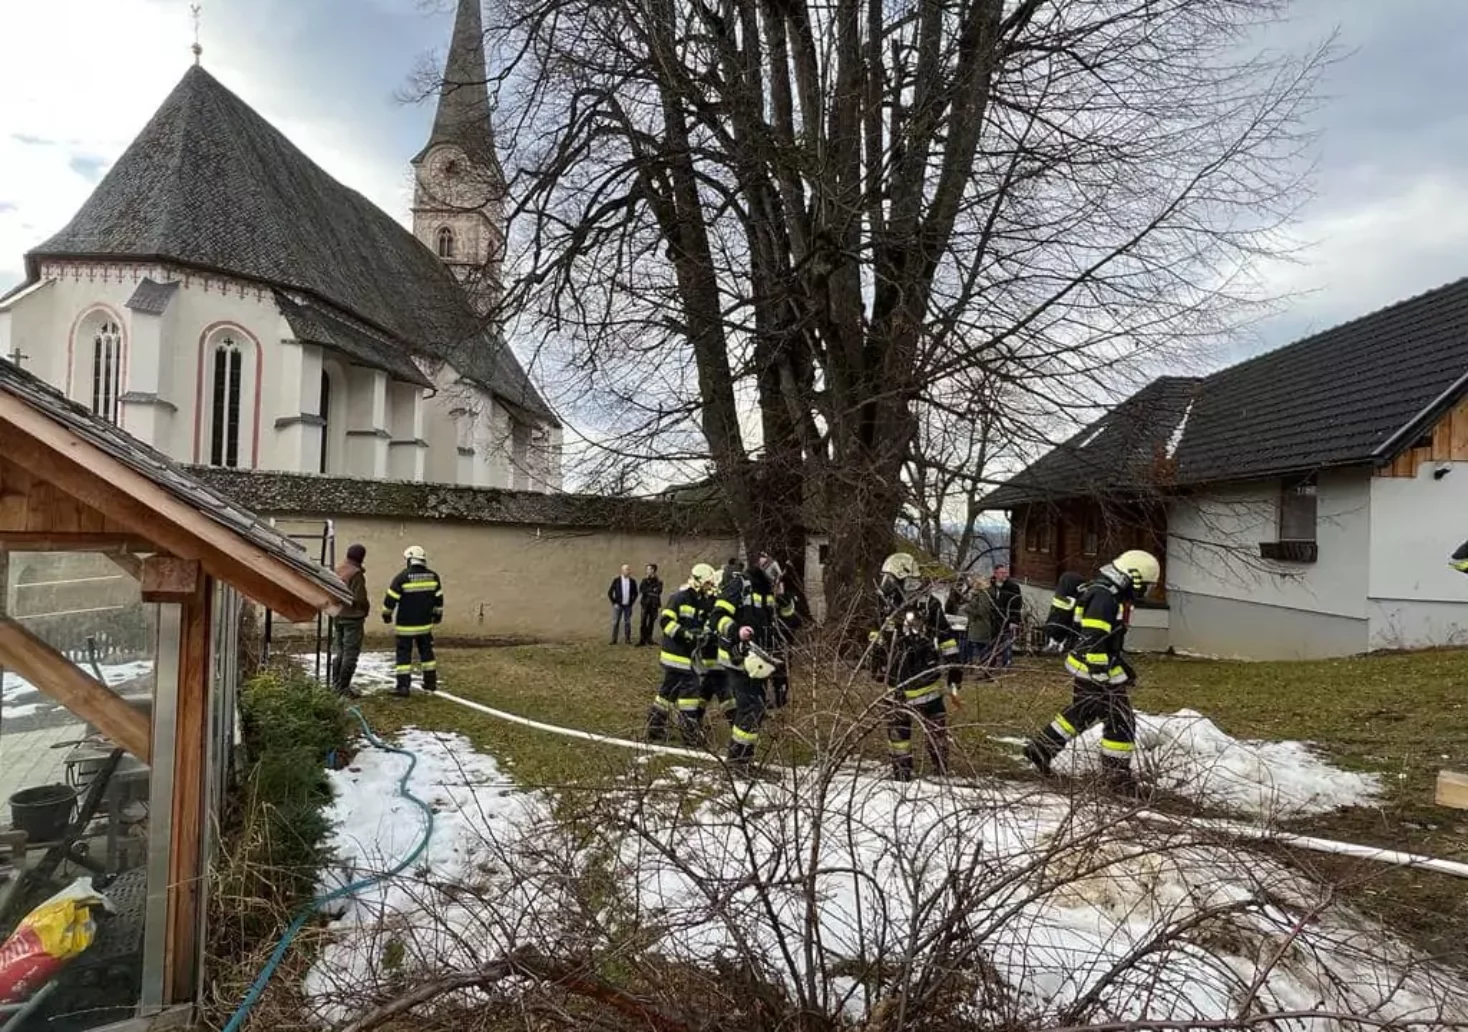 Bild auf 5min.at zeigt einen Feuerwehreinsatz bei einer Sakristei in St. Veit.